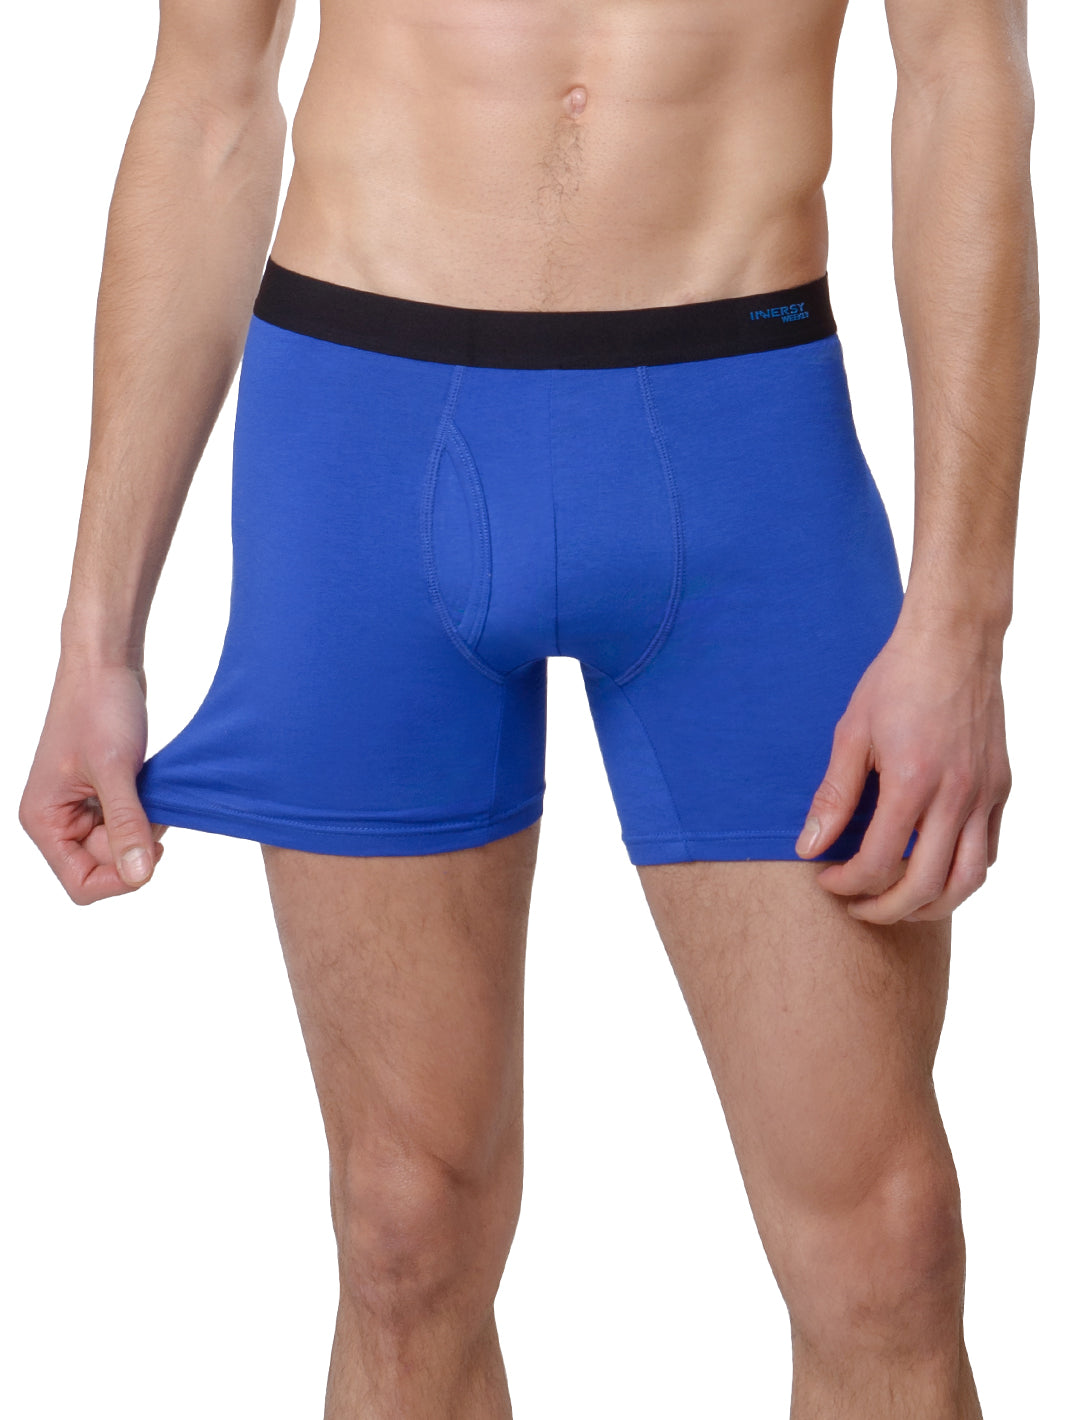 PUMIEY Mens Underwear Boxer Briefs Cotton (6-pack)